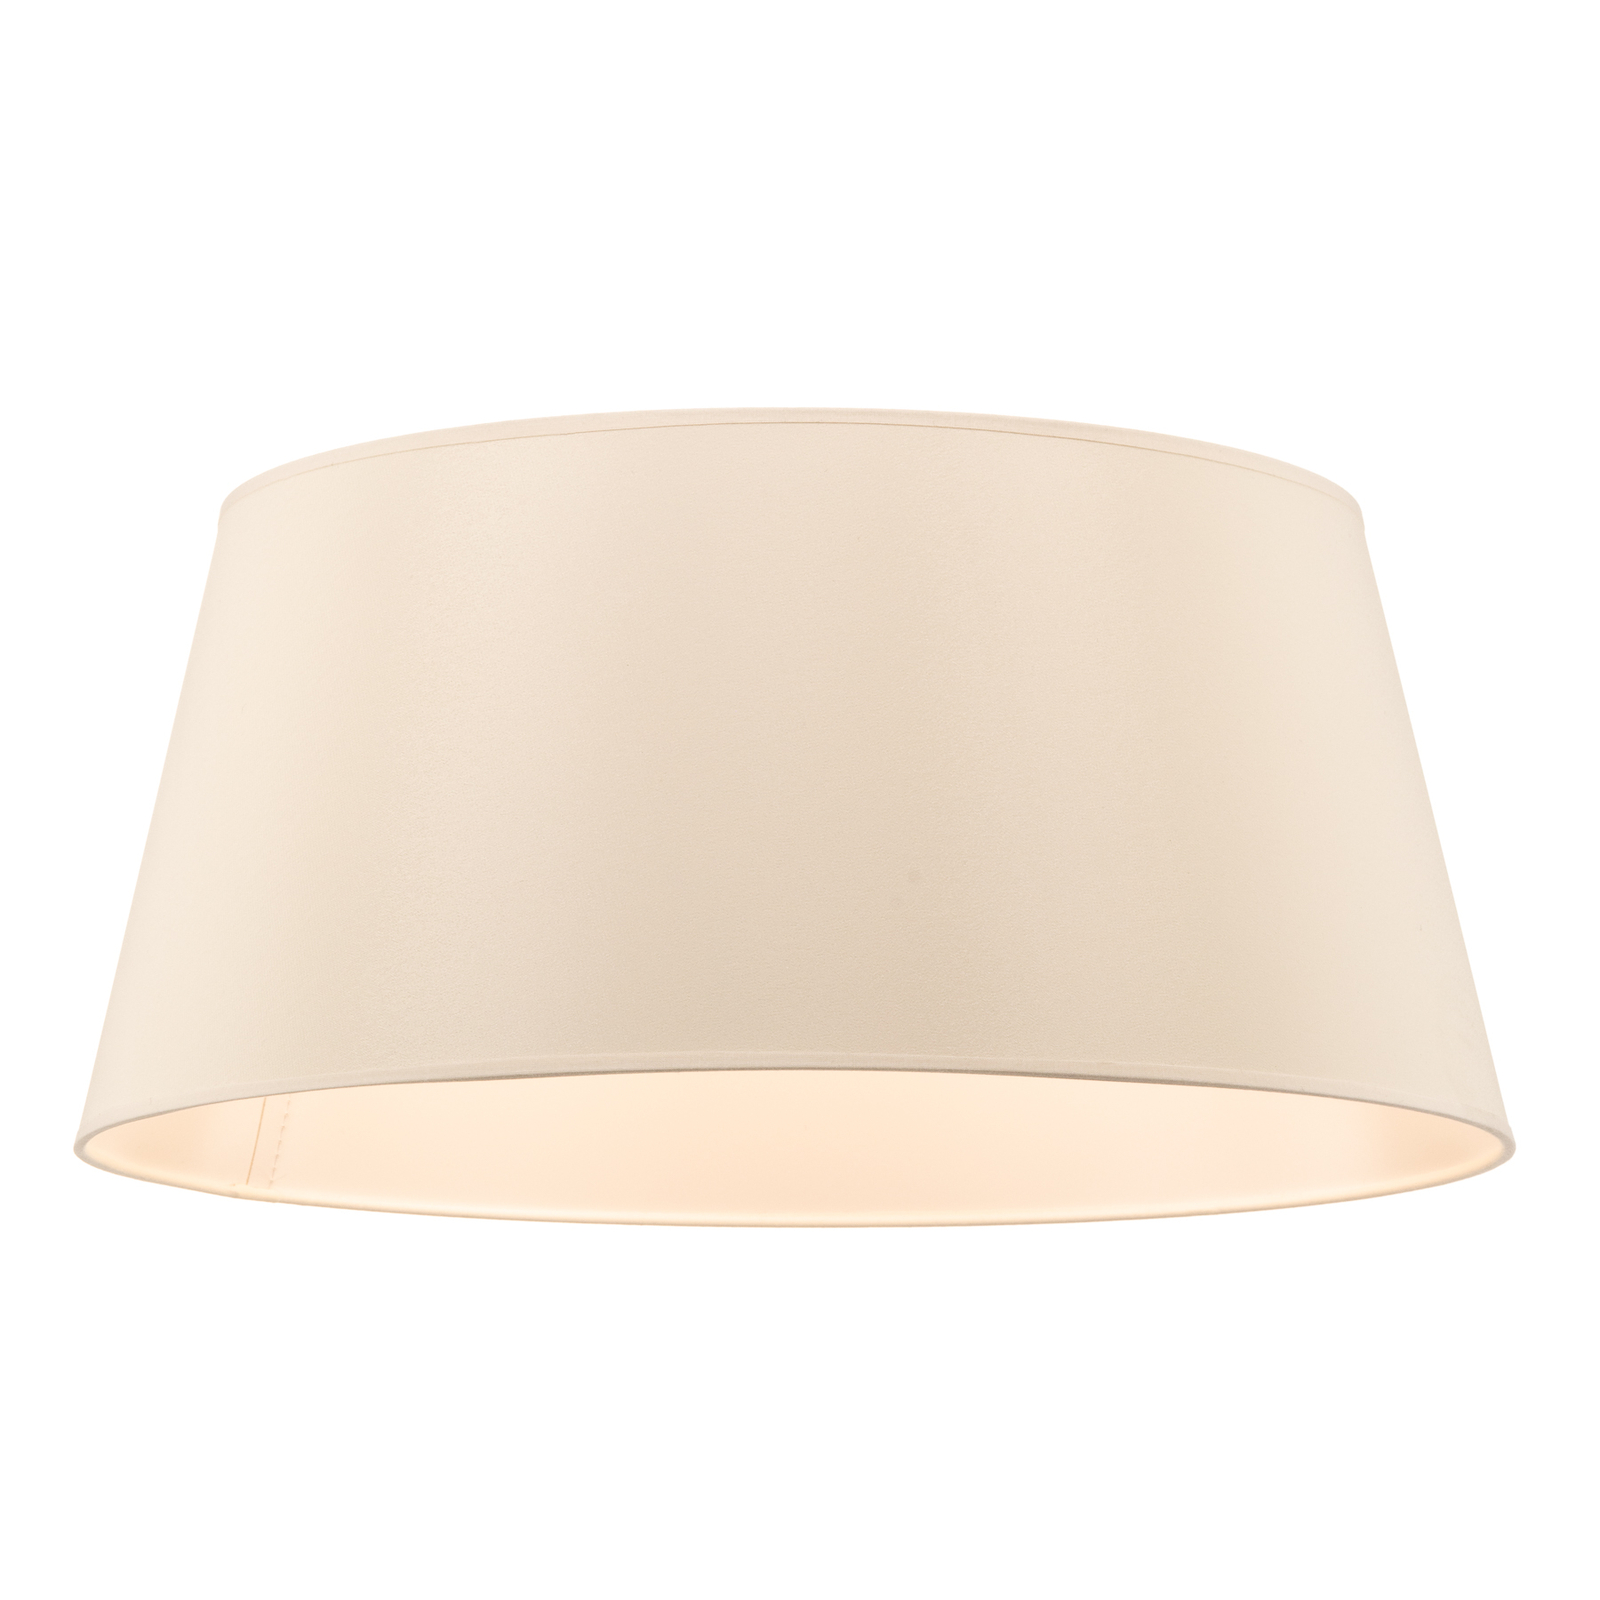 Cone lampshade height 22.5 cm, chintz ecru/white